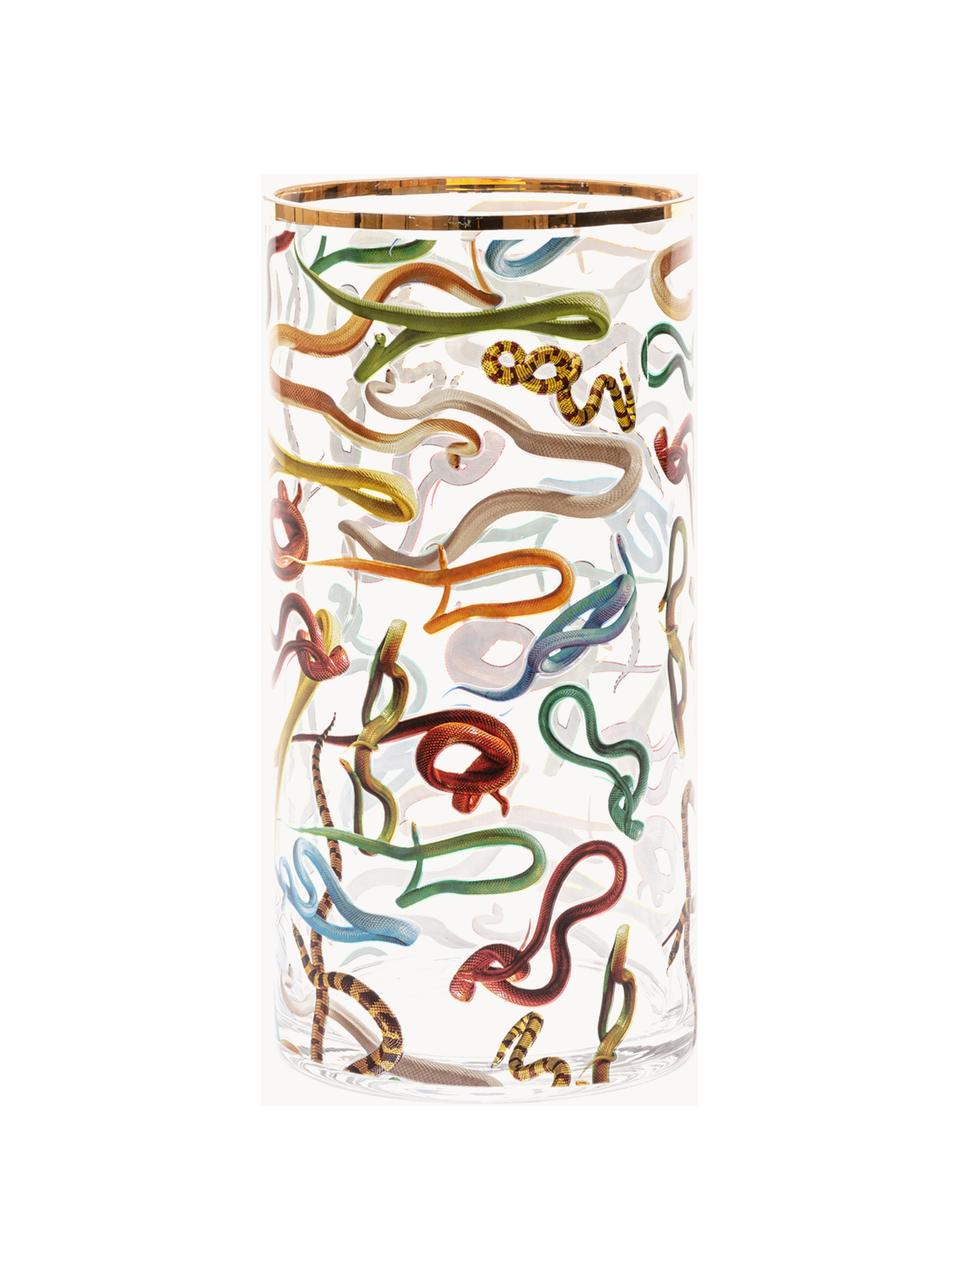 Skleněná váza Snakes, V 30 cm, Snakes, Ø 15 cm, V 30 cm